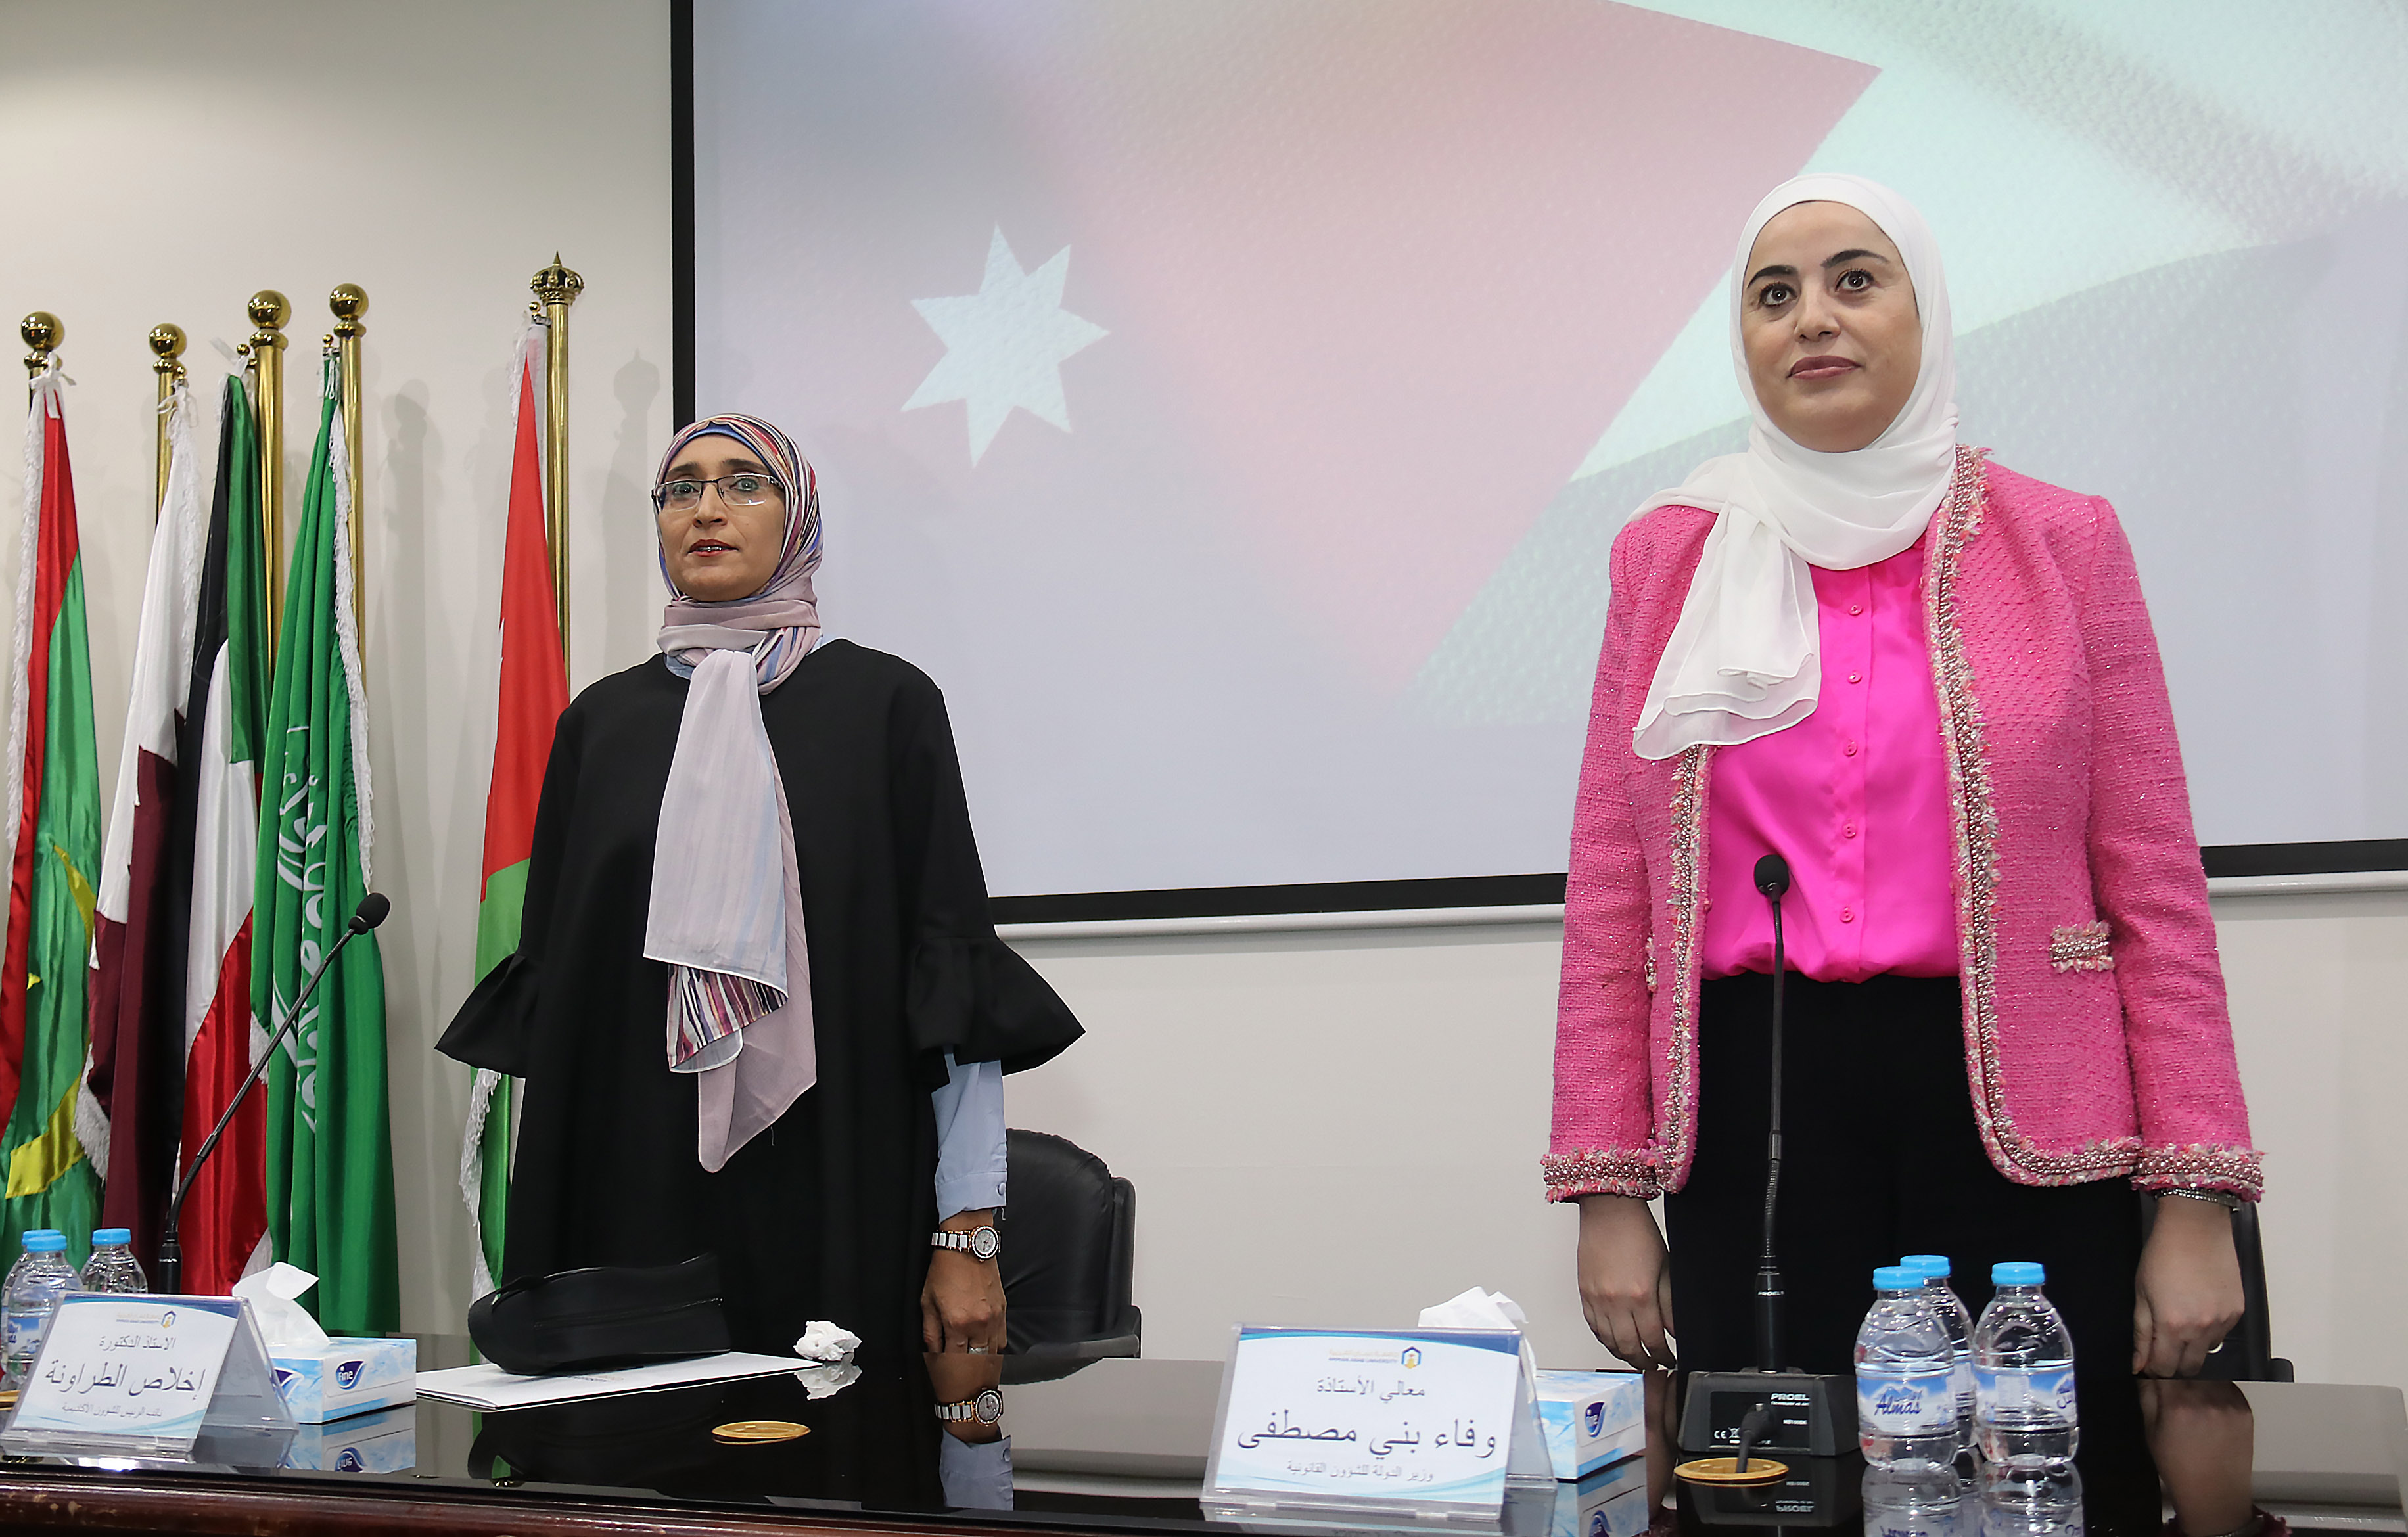 ندوة "التمكين السياسي والقيادي للمرأة الأردنية" في عمان العربية3